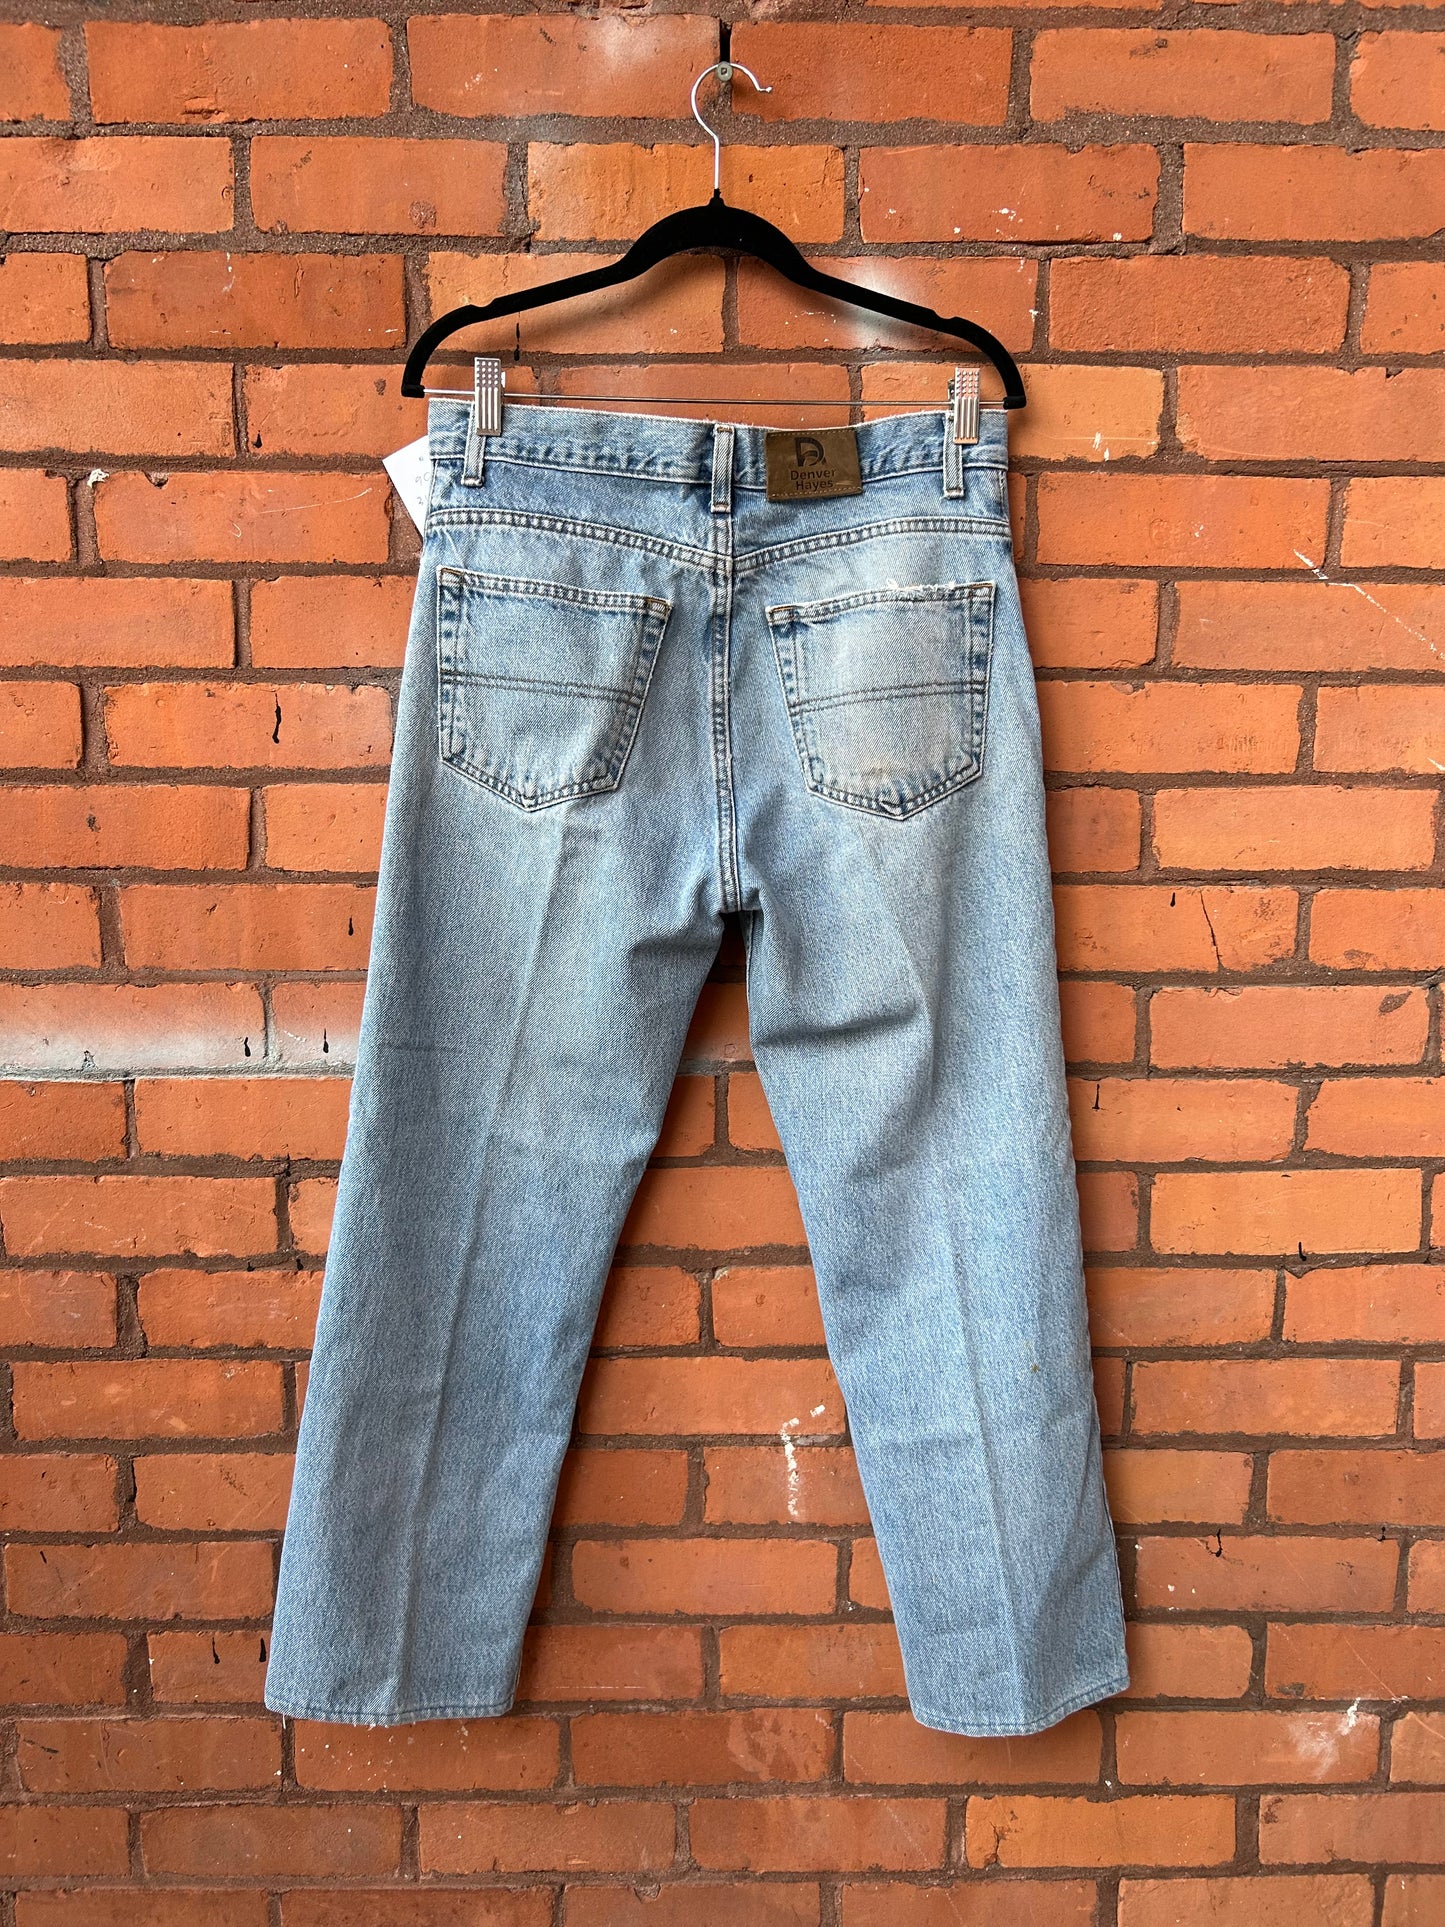 90’s Vintage Light Wash Distressed Straight Leg Jeans / 31 Waist